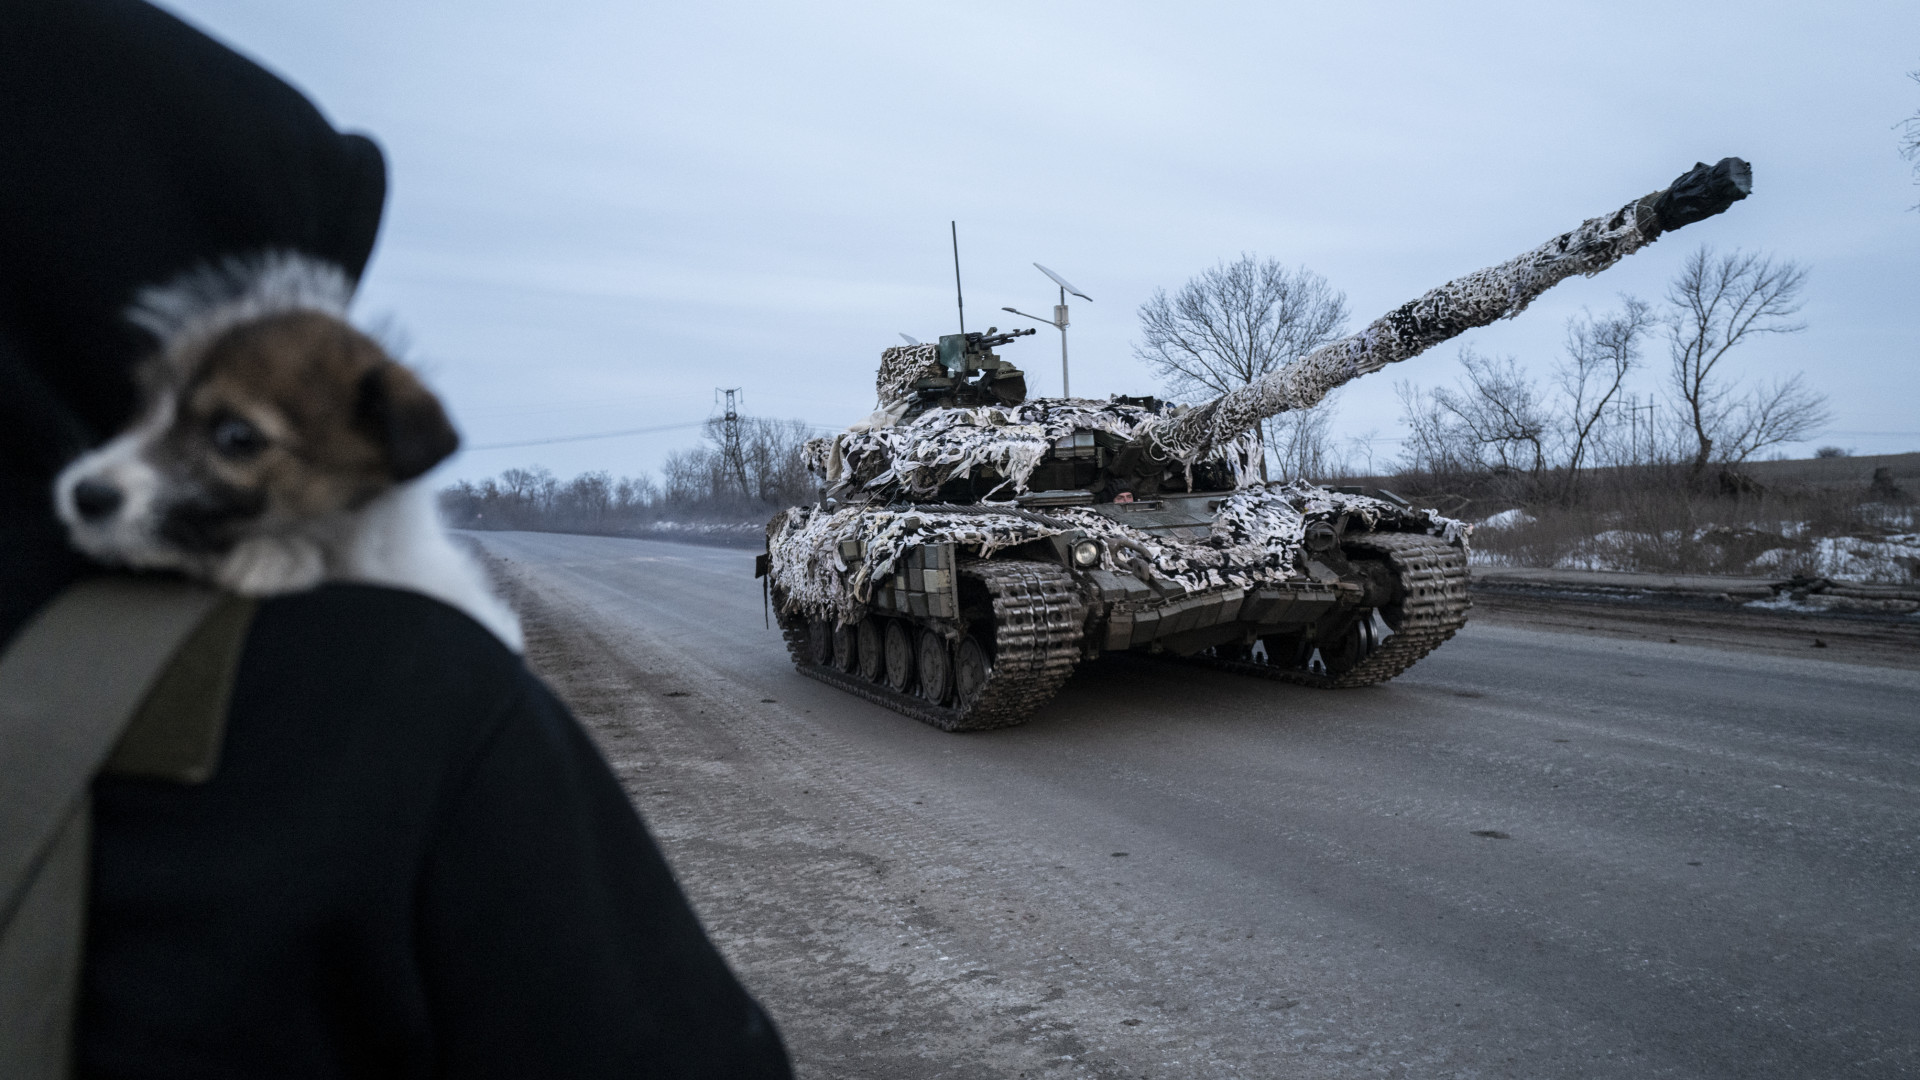 ukran harckocsi tank roham pancelos 589810